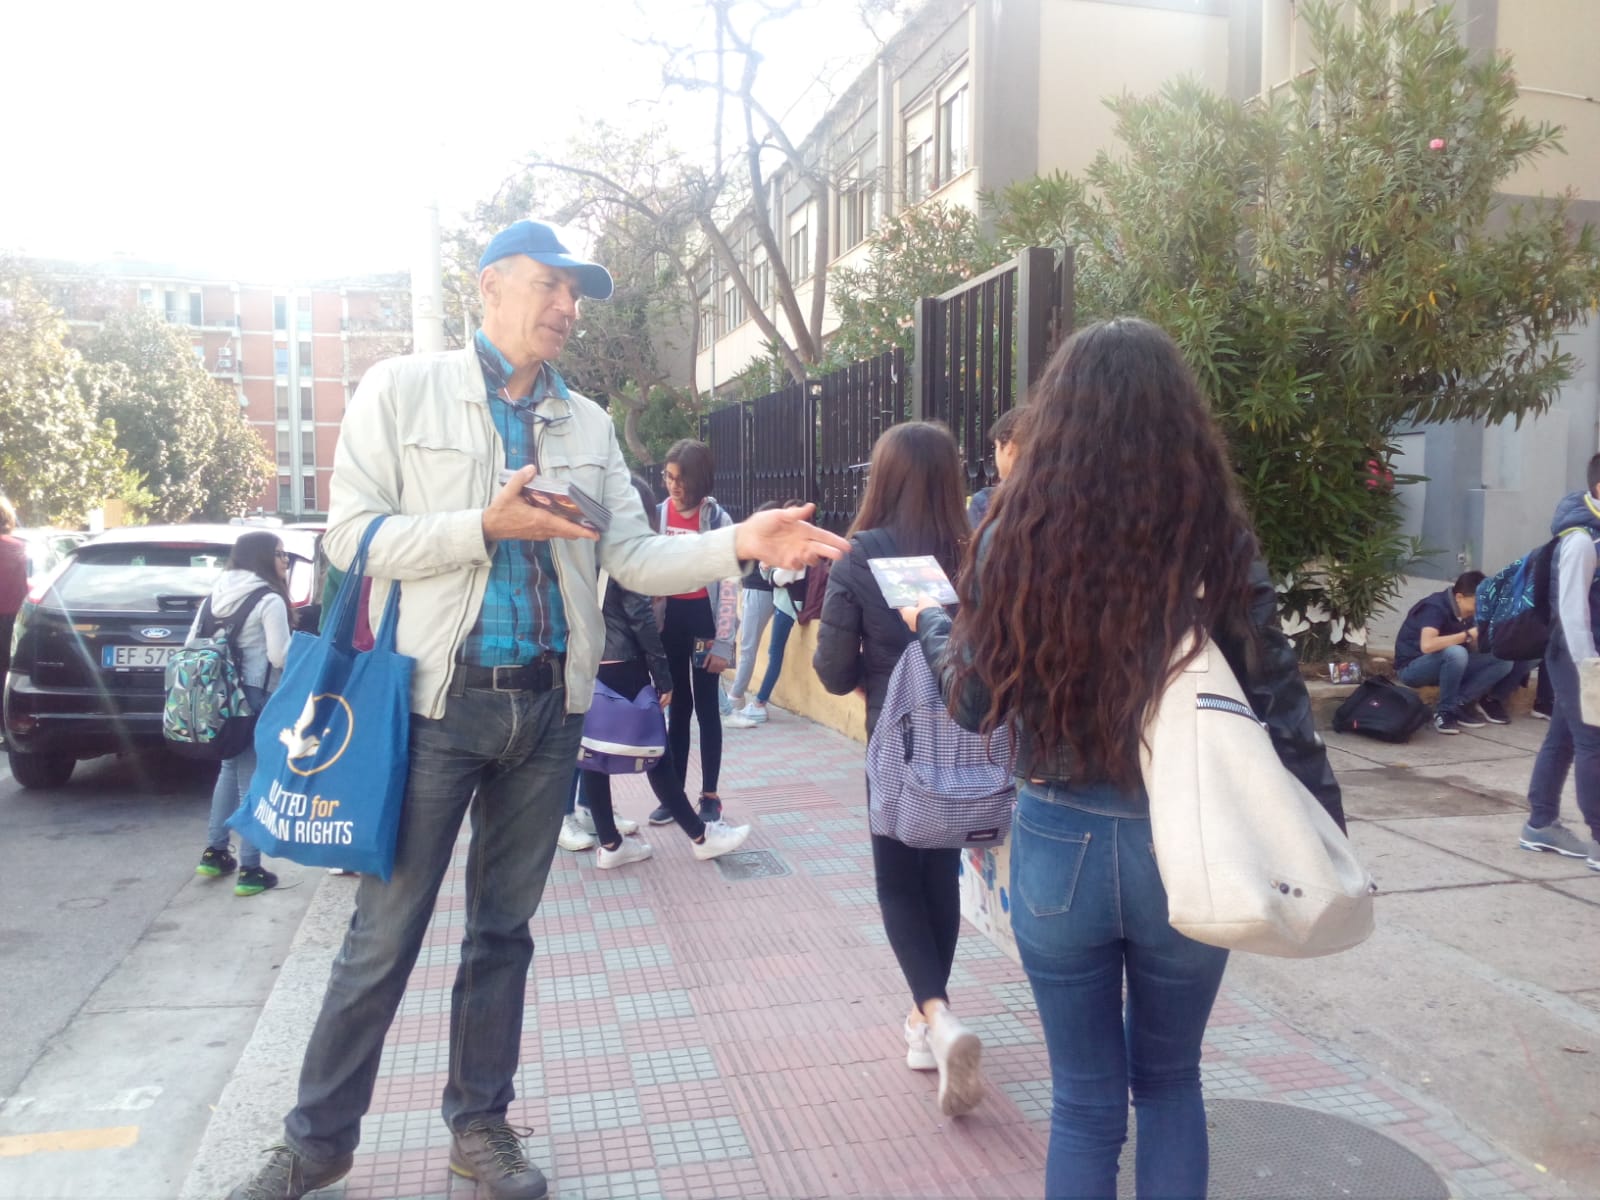  I Diritti Umani sconosciuti e calpestati, i volontari di Scientology li promuovono a Cagliari